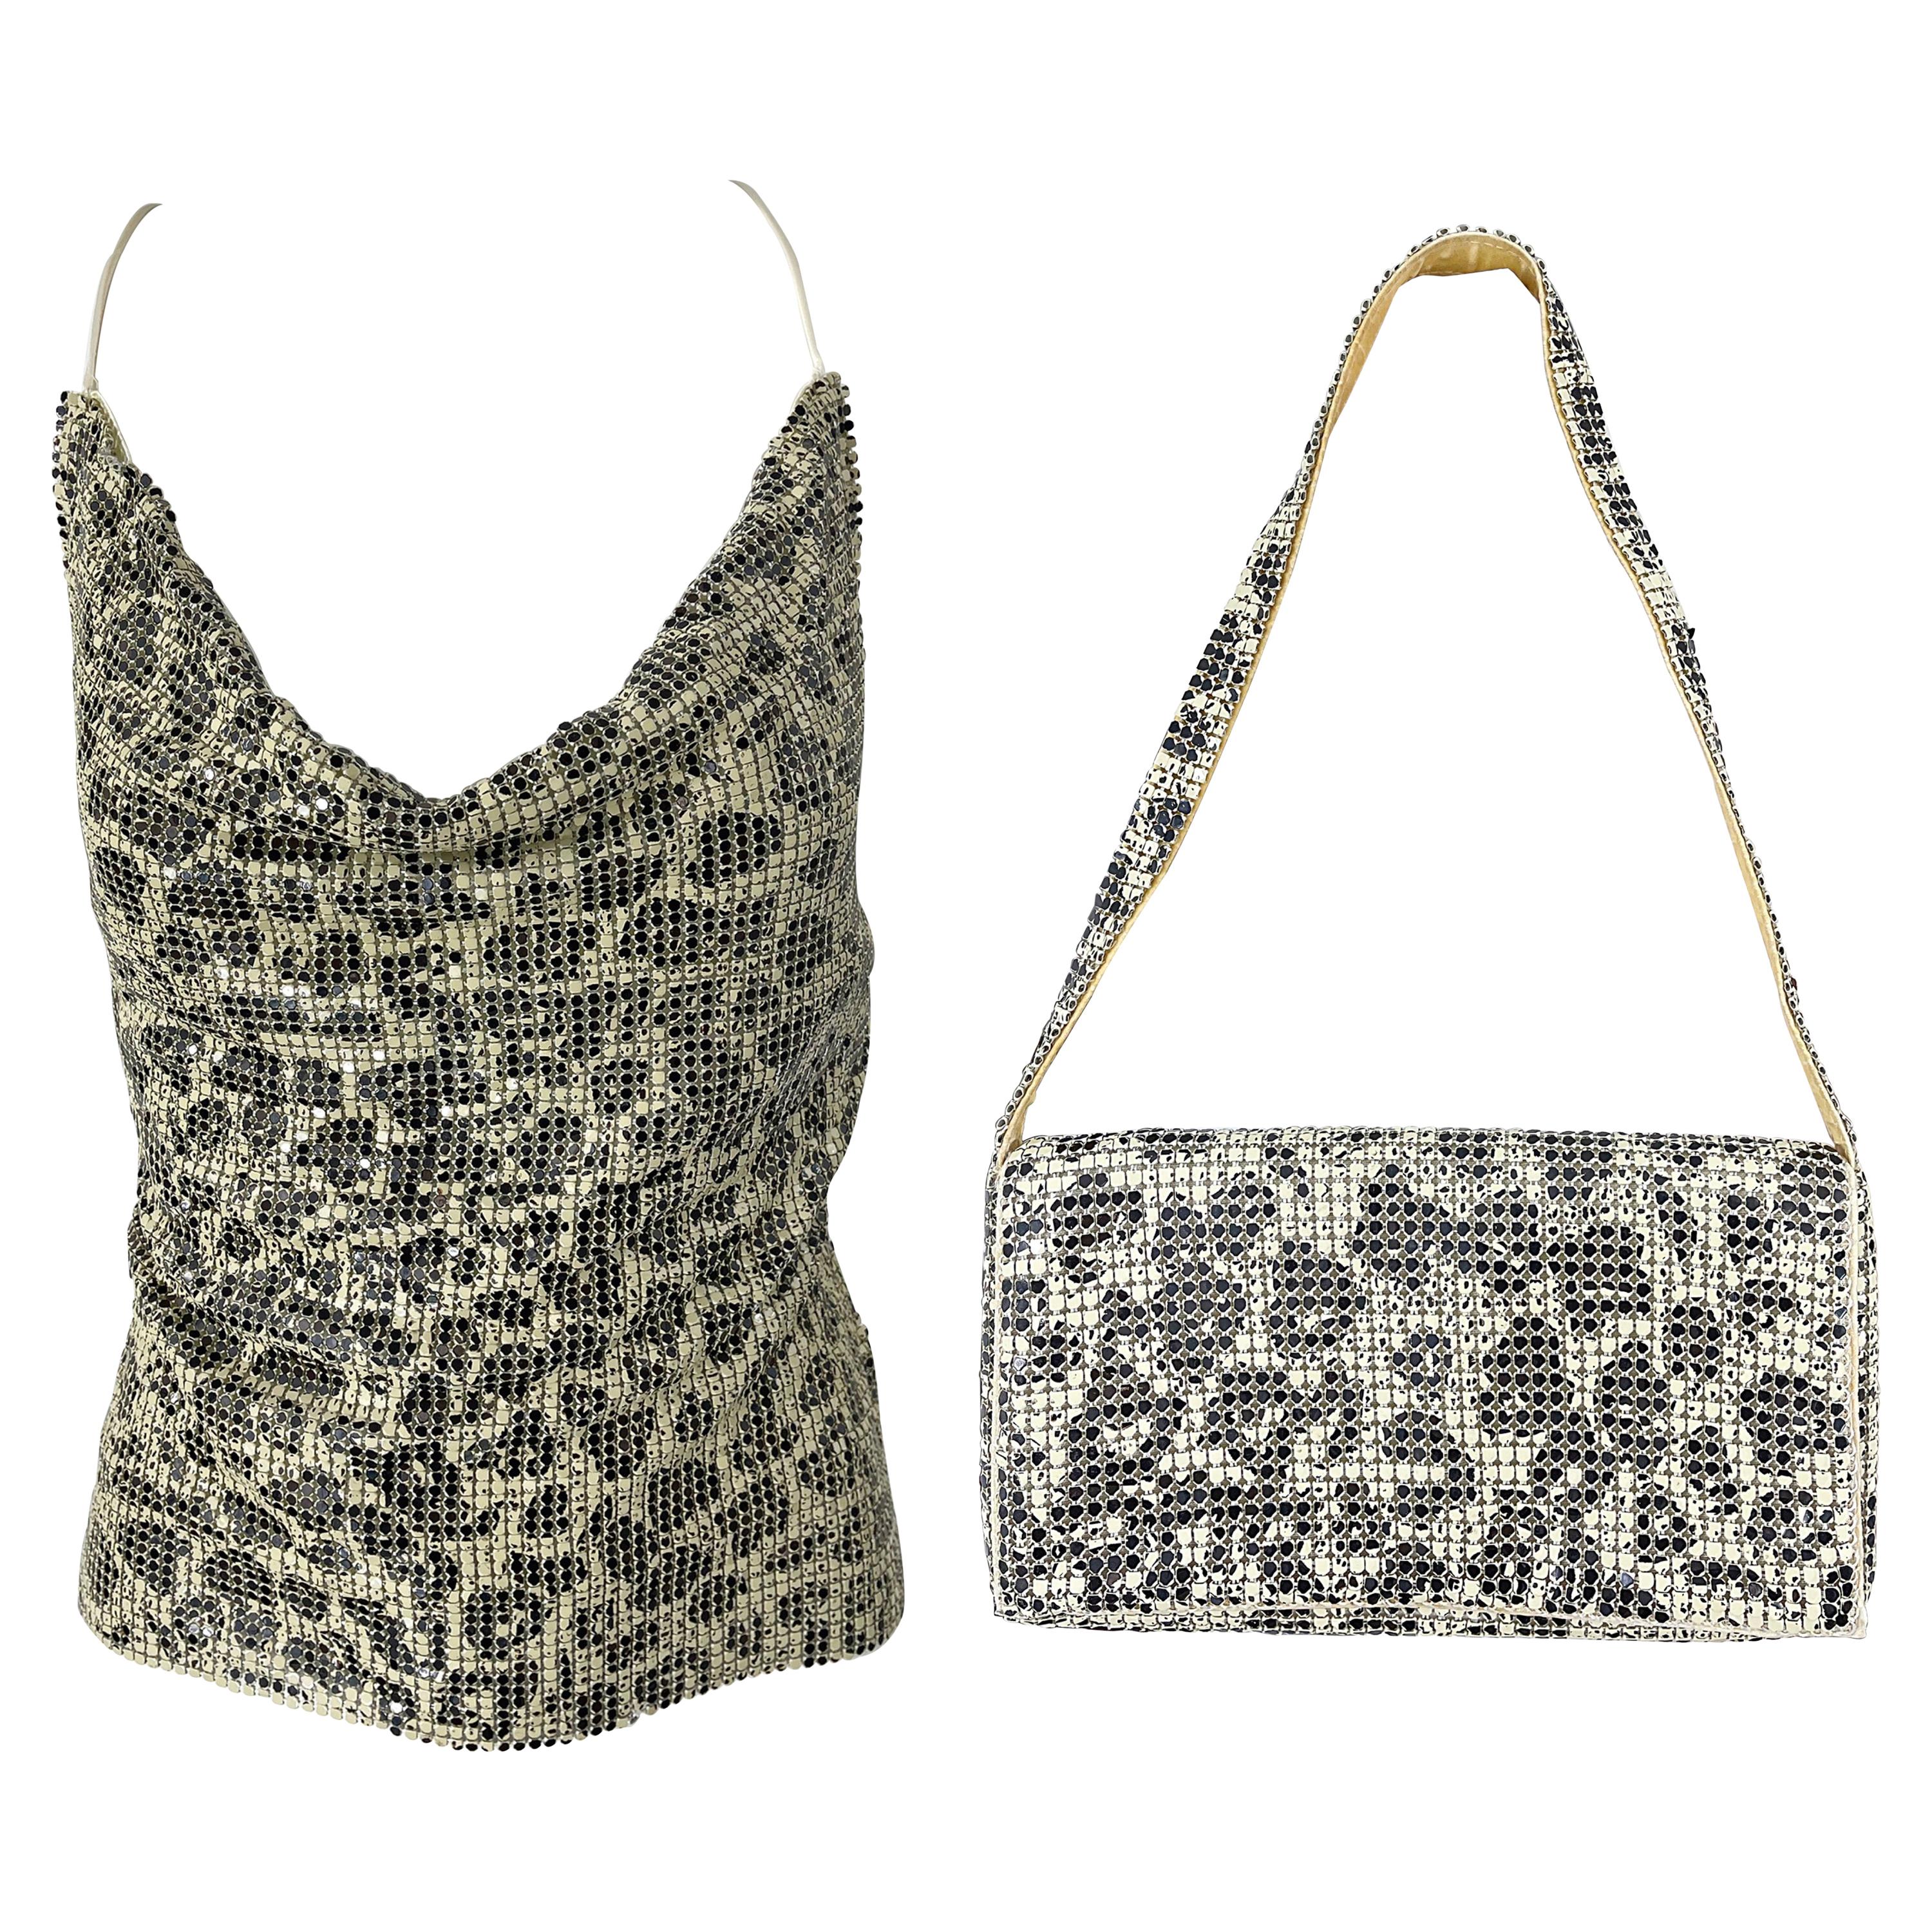 1990er Jahre Kettenhemd Schwarzes und weißes Leoparden-Tierdruck-Halter-Top und Handtasche